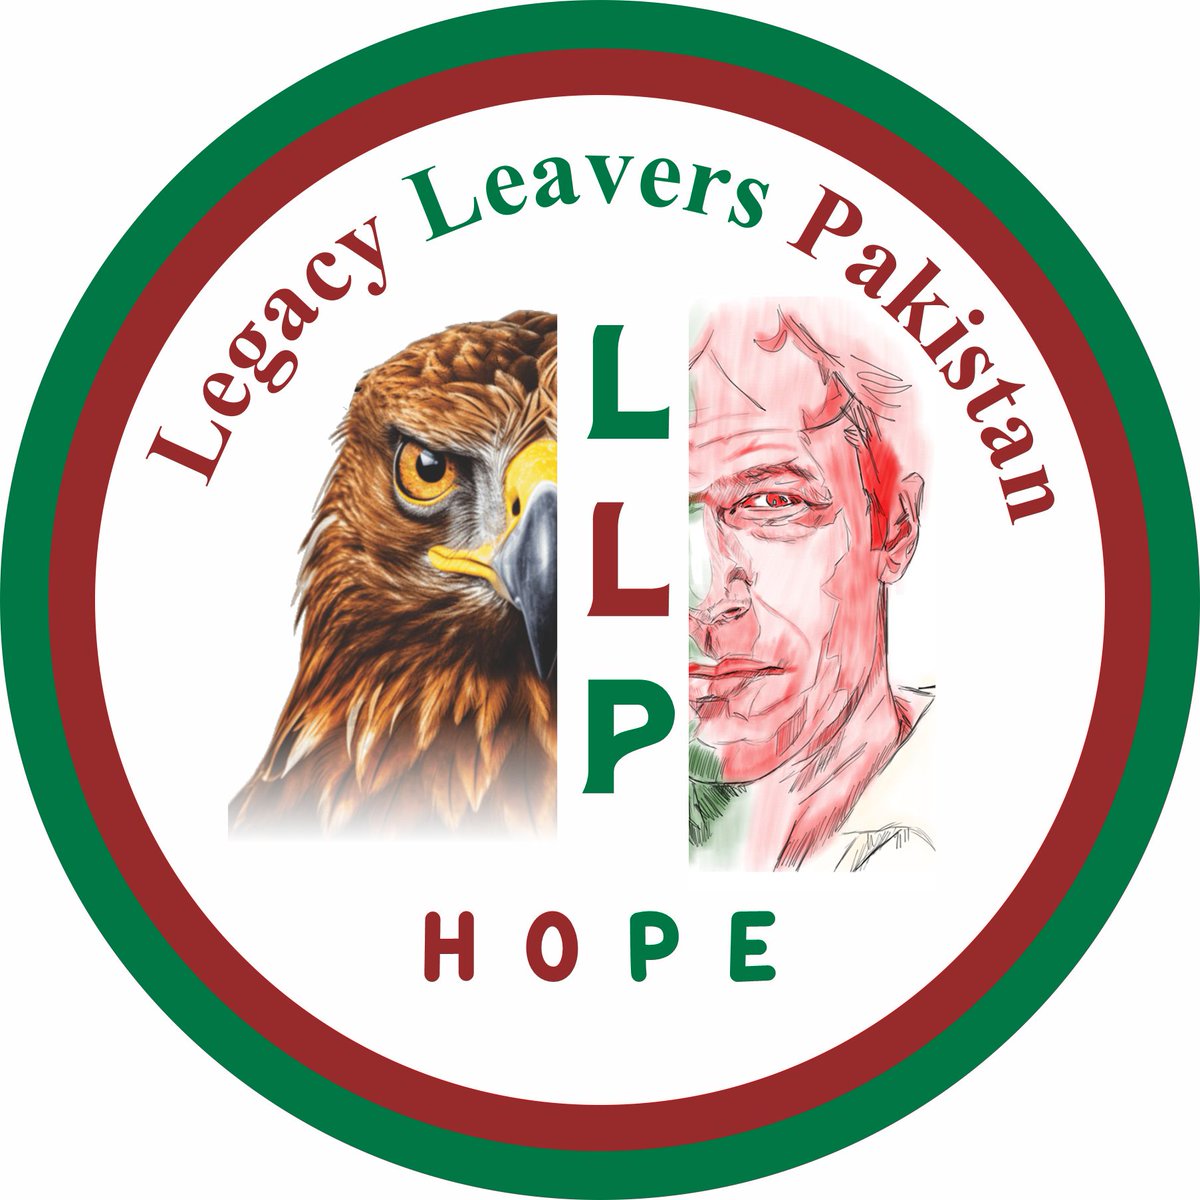 السلام و علیکم میں آپکو اپنی ٹیم میں شامل ہونے کی دعوت دیتی ہوں جس کا مقصد سوشل میڈیا کے ذریعے ملک پاکستان اور عمران خان صاحب کے حوالے سے منفی پروپیگنڈا کرنے والوں کو جواب دینا ہے @LegacyLeavers_ ٹیم میں شامل ہونے کے لئے کمنٹ میں ،yes” لکھیں Team head @Azizazjan